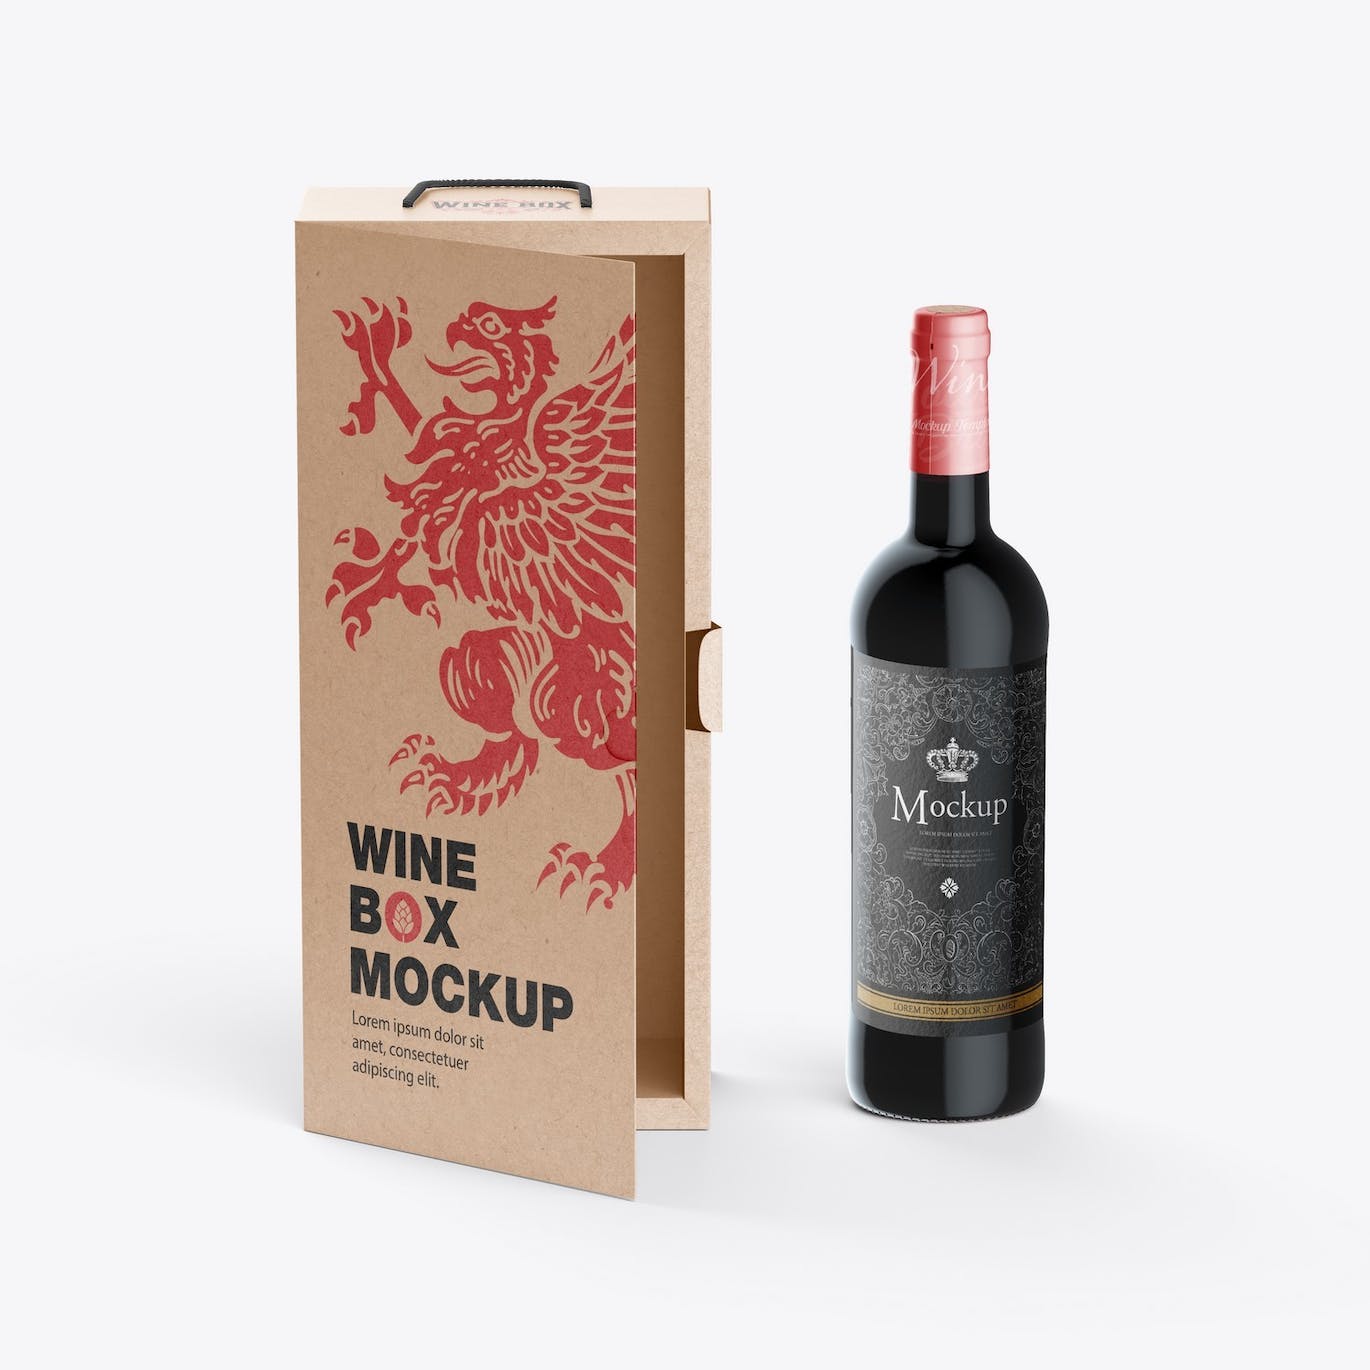 红酒酒瓶纸礼盒品牌包装设计样机 Box with Wine Bottle Mockup 样机素材 第5张